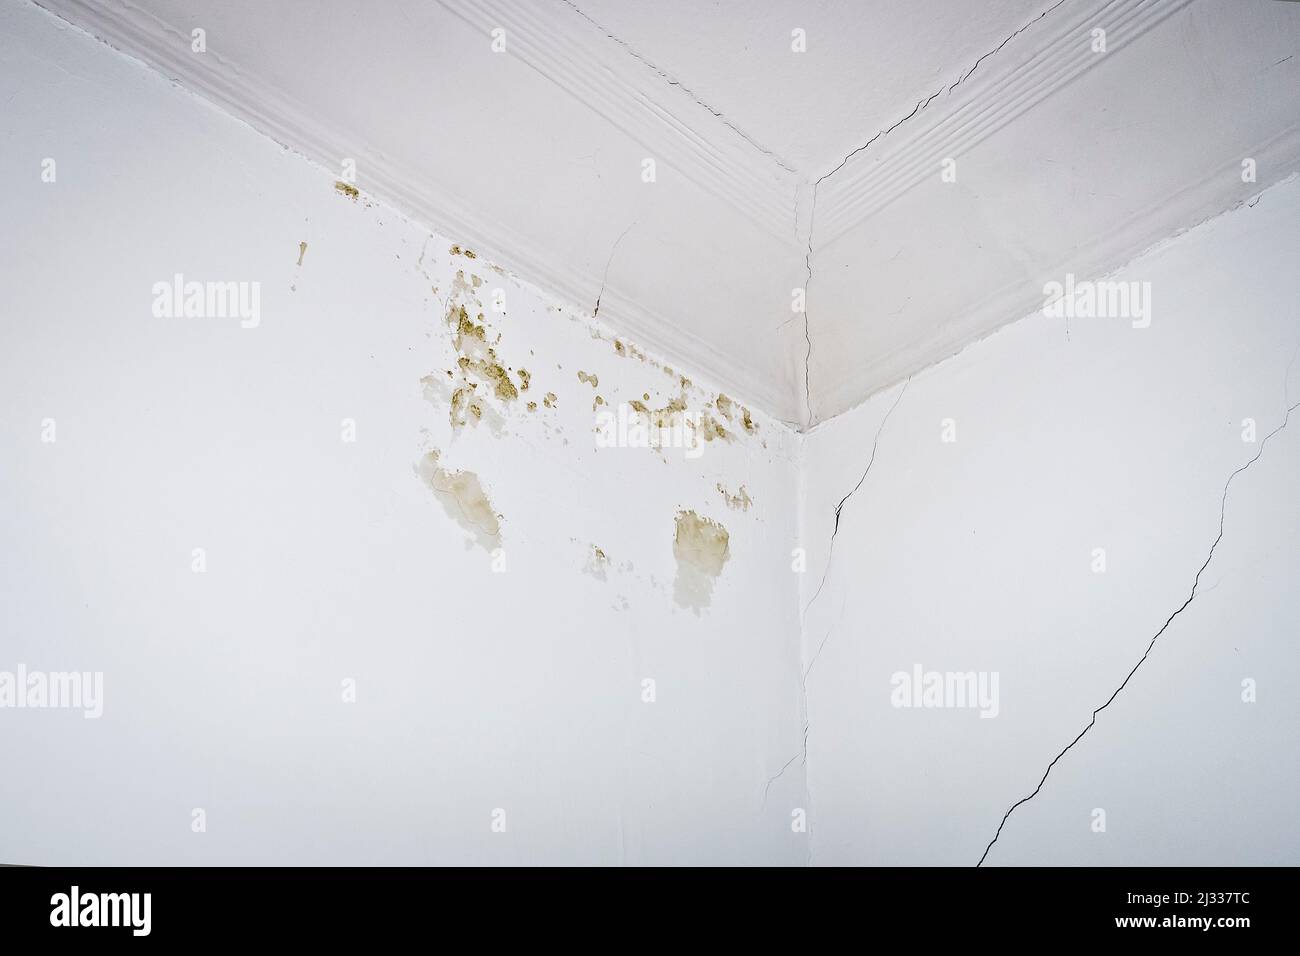 Concepto de daños en el edificio: Pequeñas manchas de agua mohosa y grietas en paredes y estuco de techo de una casa antigua. Foto de stock